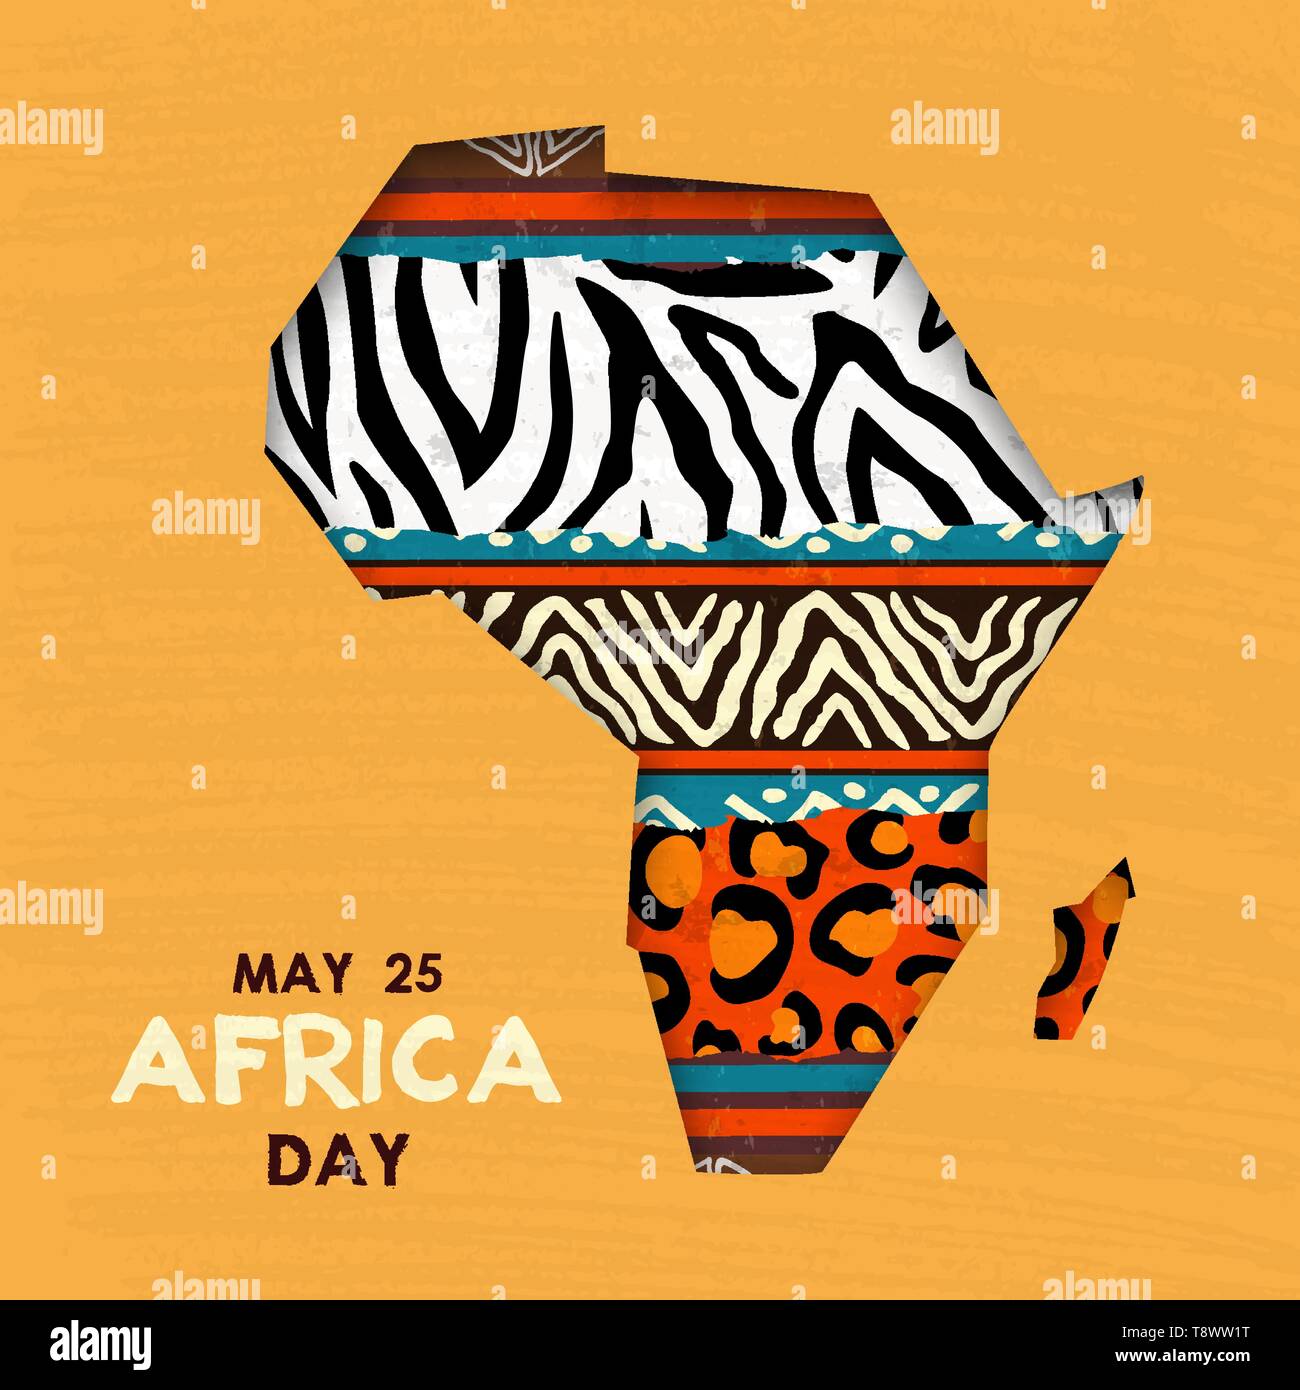 Afrika Tag Grußkarte Abbildung für 25 feiern können. Afrikanischen Kontinent Karte mit ethnische Kunst und Wild animal print Texturen. Stock Vektor